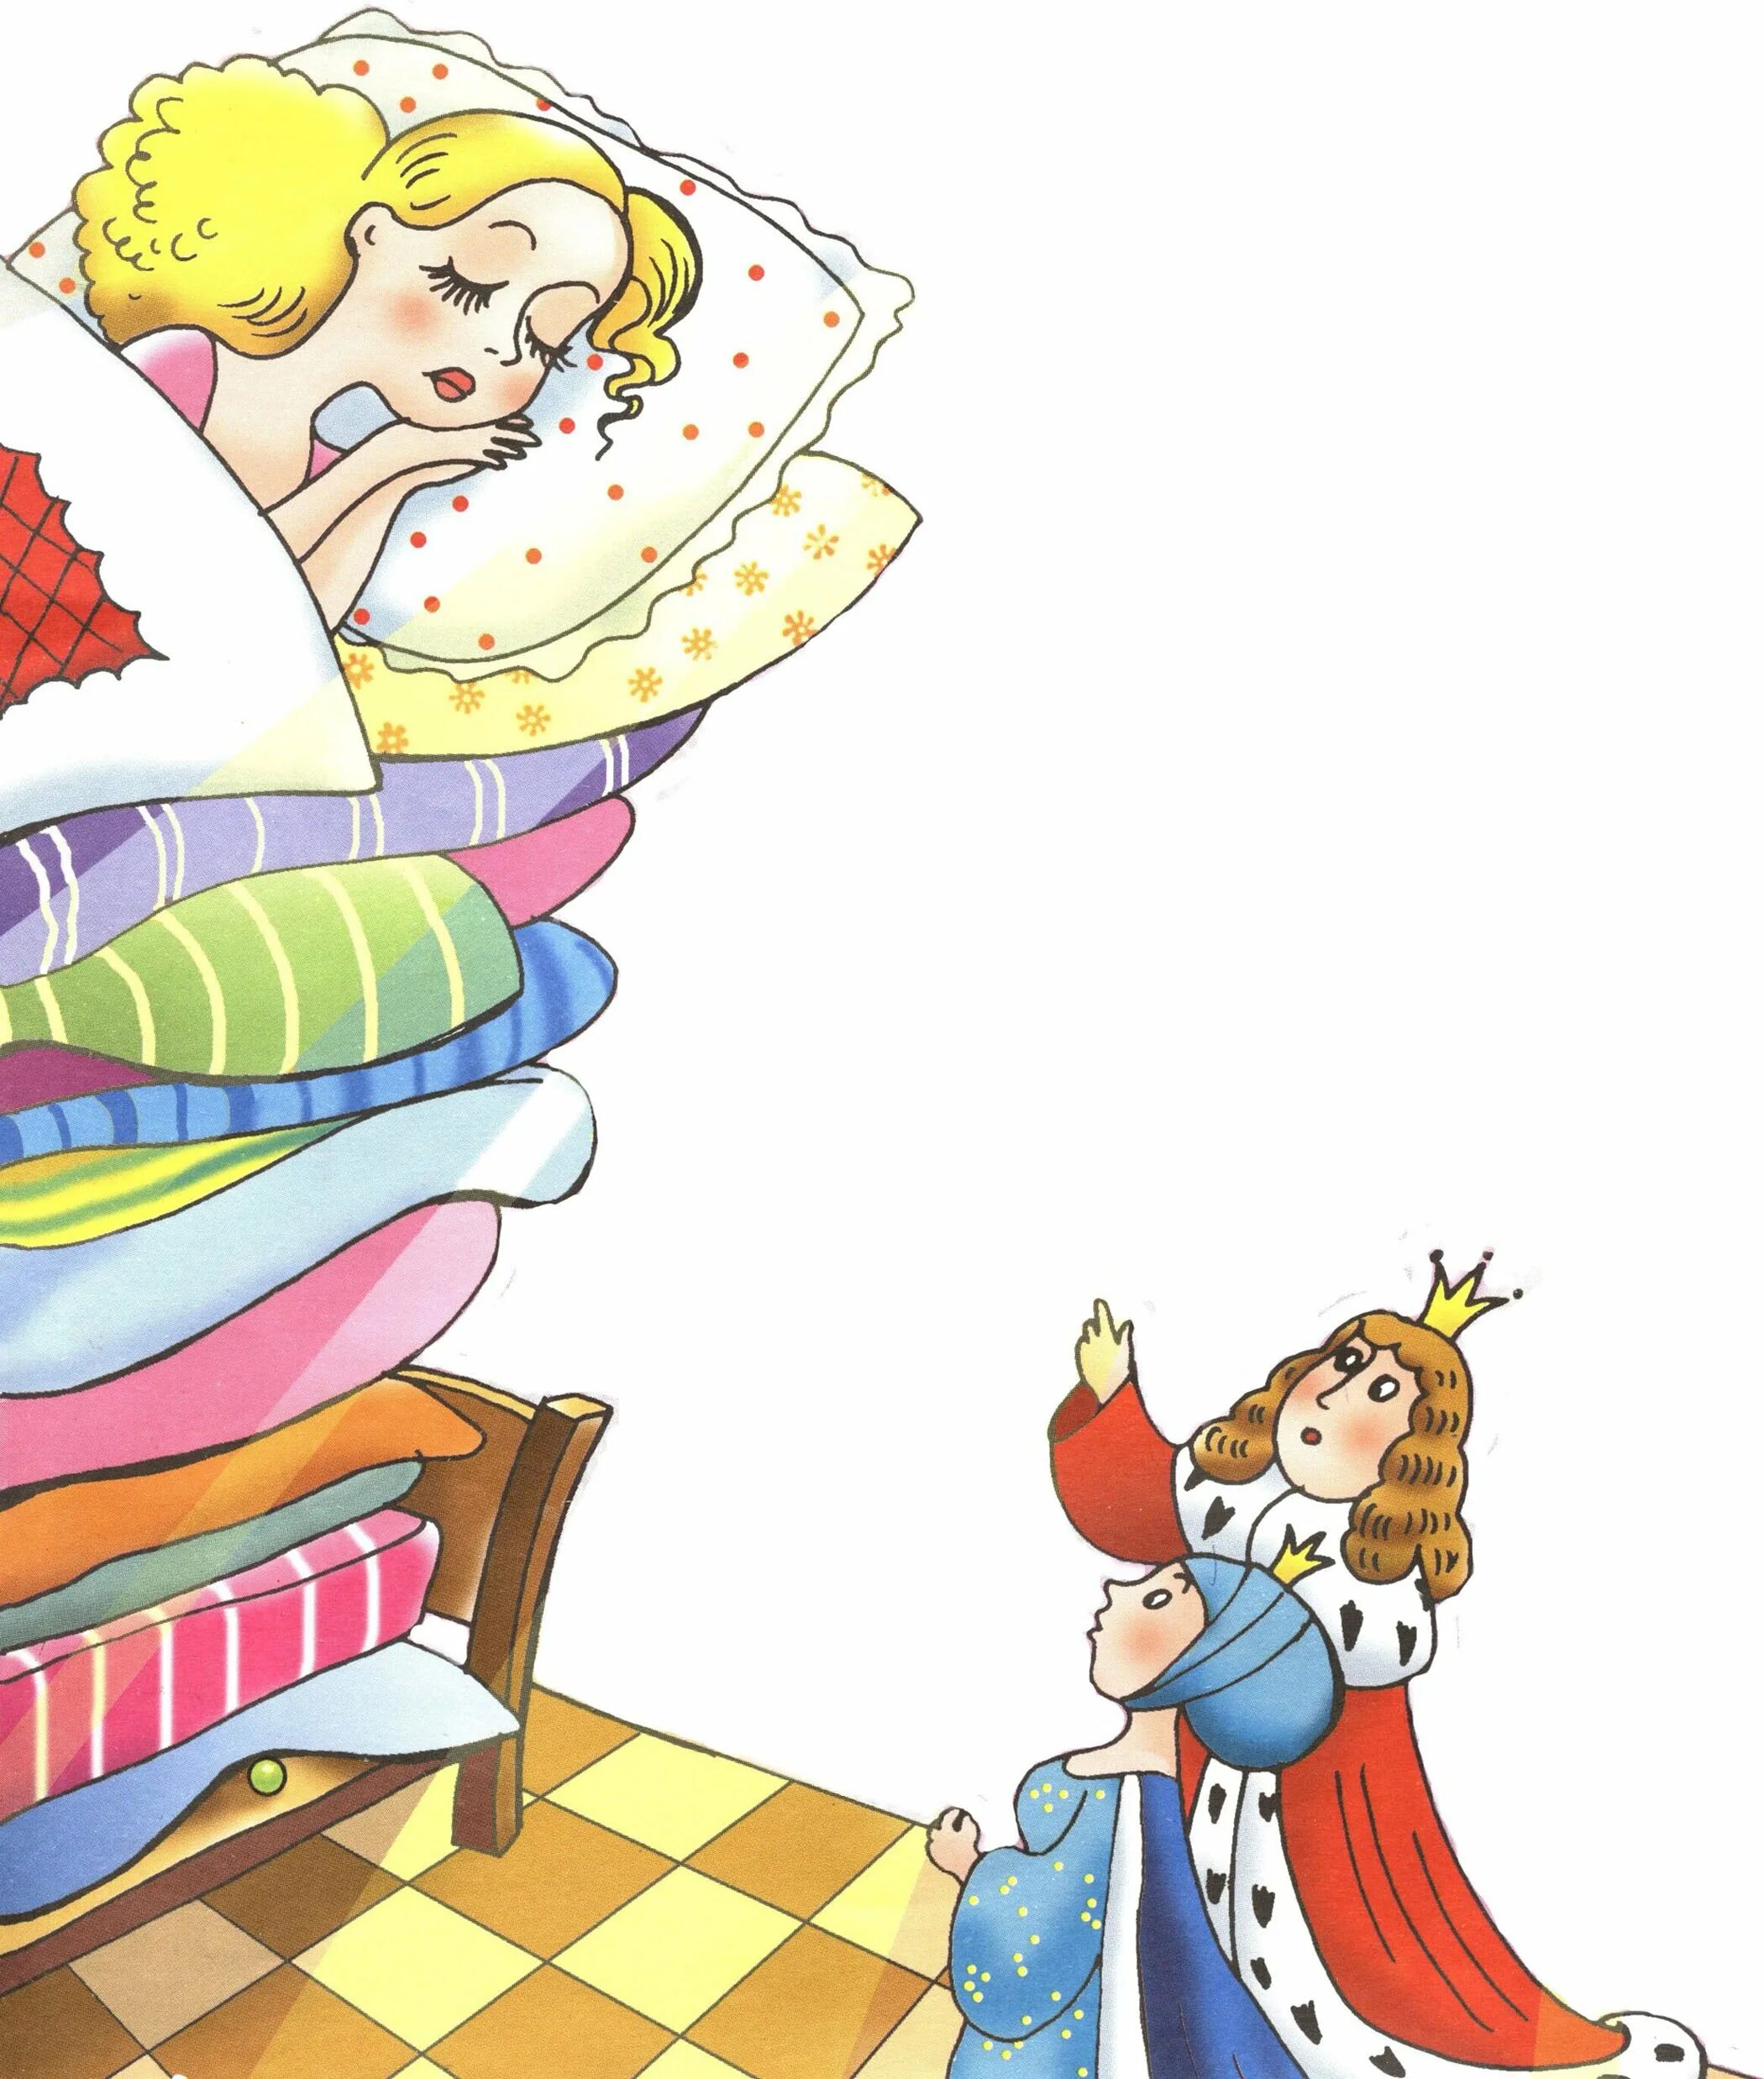 Иллюстрация к сказке принцесса на горошине. Принцесса на горошине: сказки. Андерсен принцесса на горошине. Сказки г х Андерсена принцесса на горошине. Иллюстрации к Андерсену принцесса на горошине.